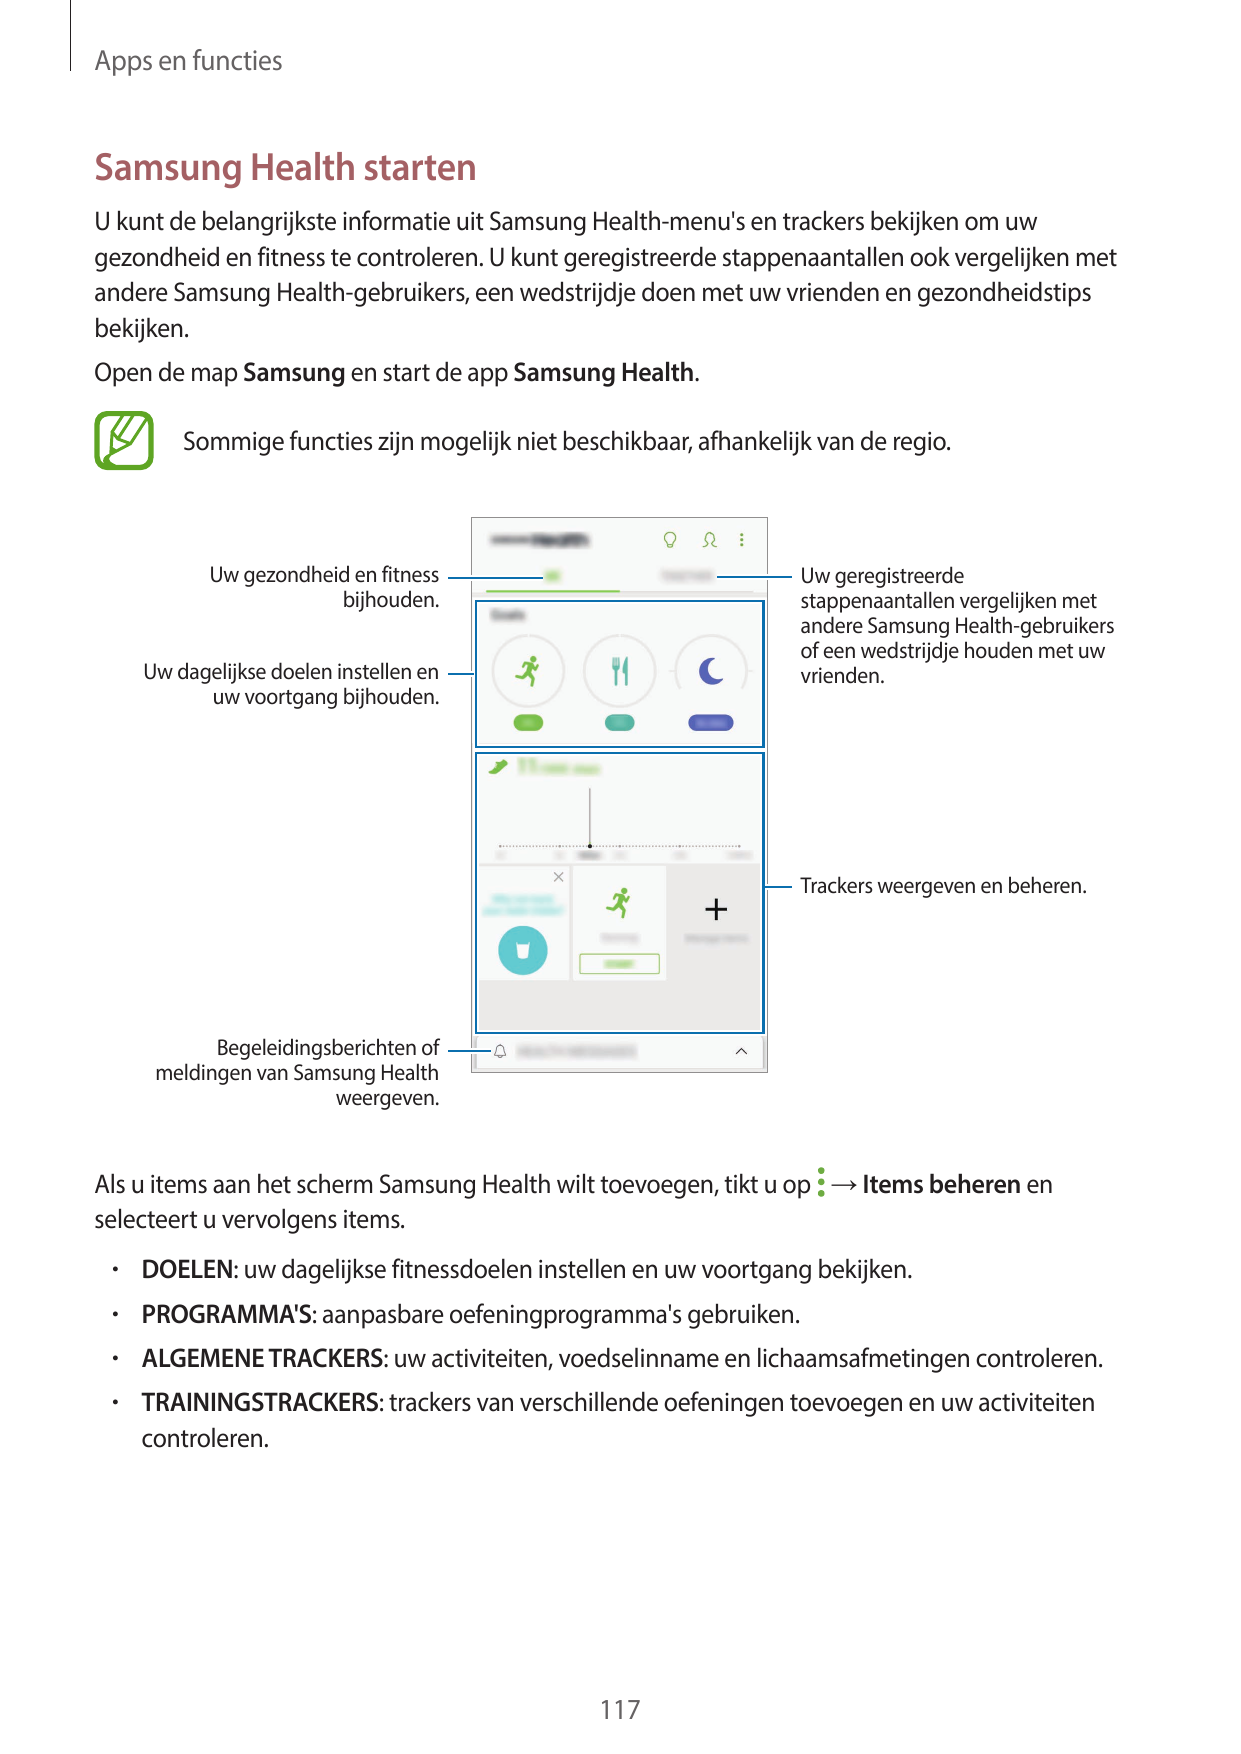 Apps en functiesSamsung Health startenU kunt de belangrijkste informatie uit Samsung Health-menu's en trackers bekijken om uwgez